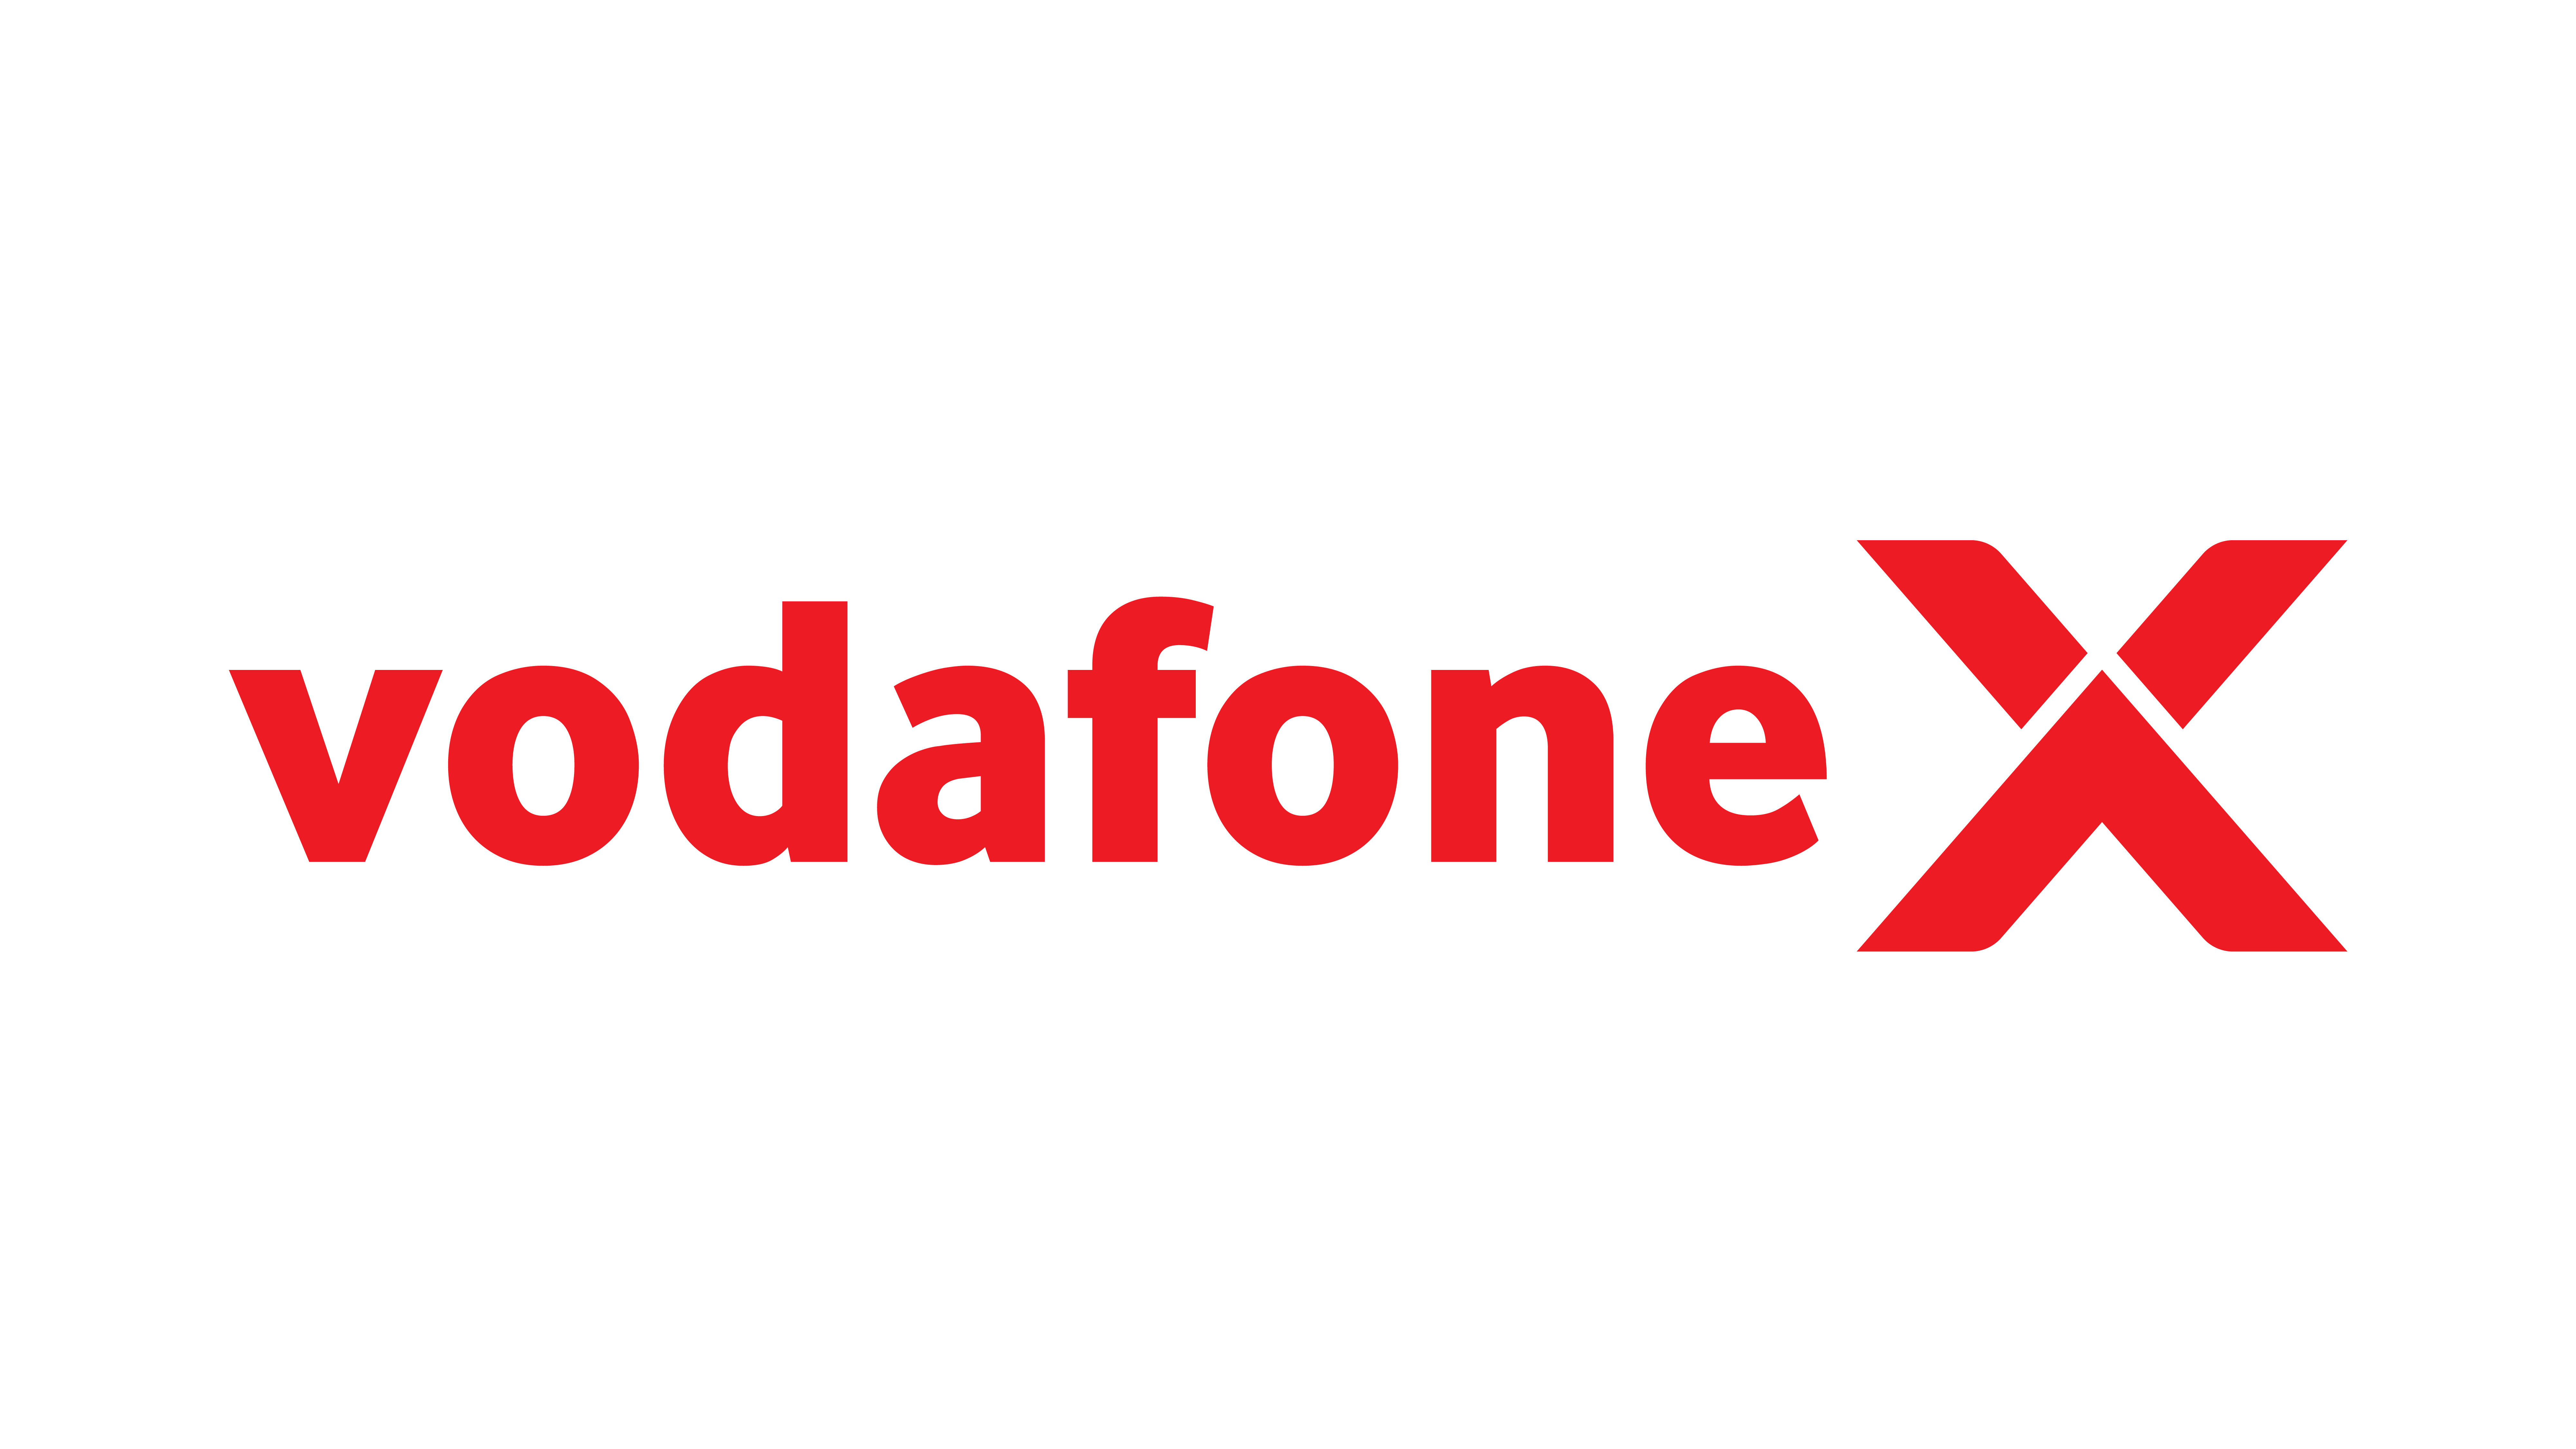 Vodafone X logo